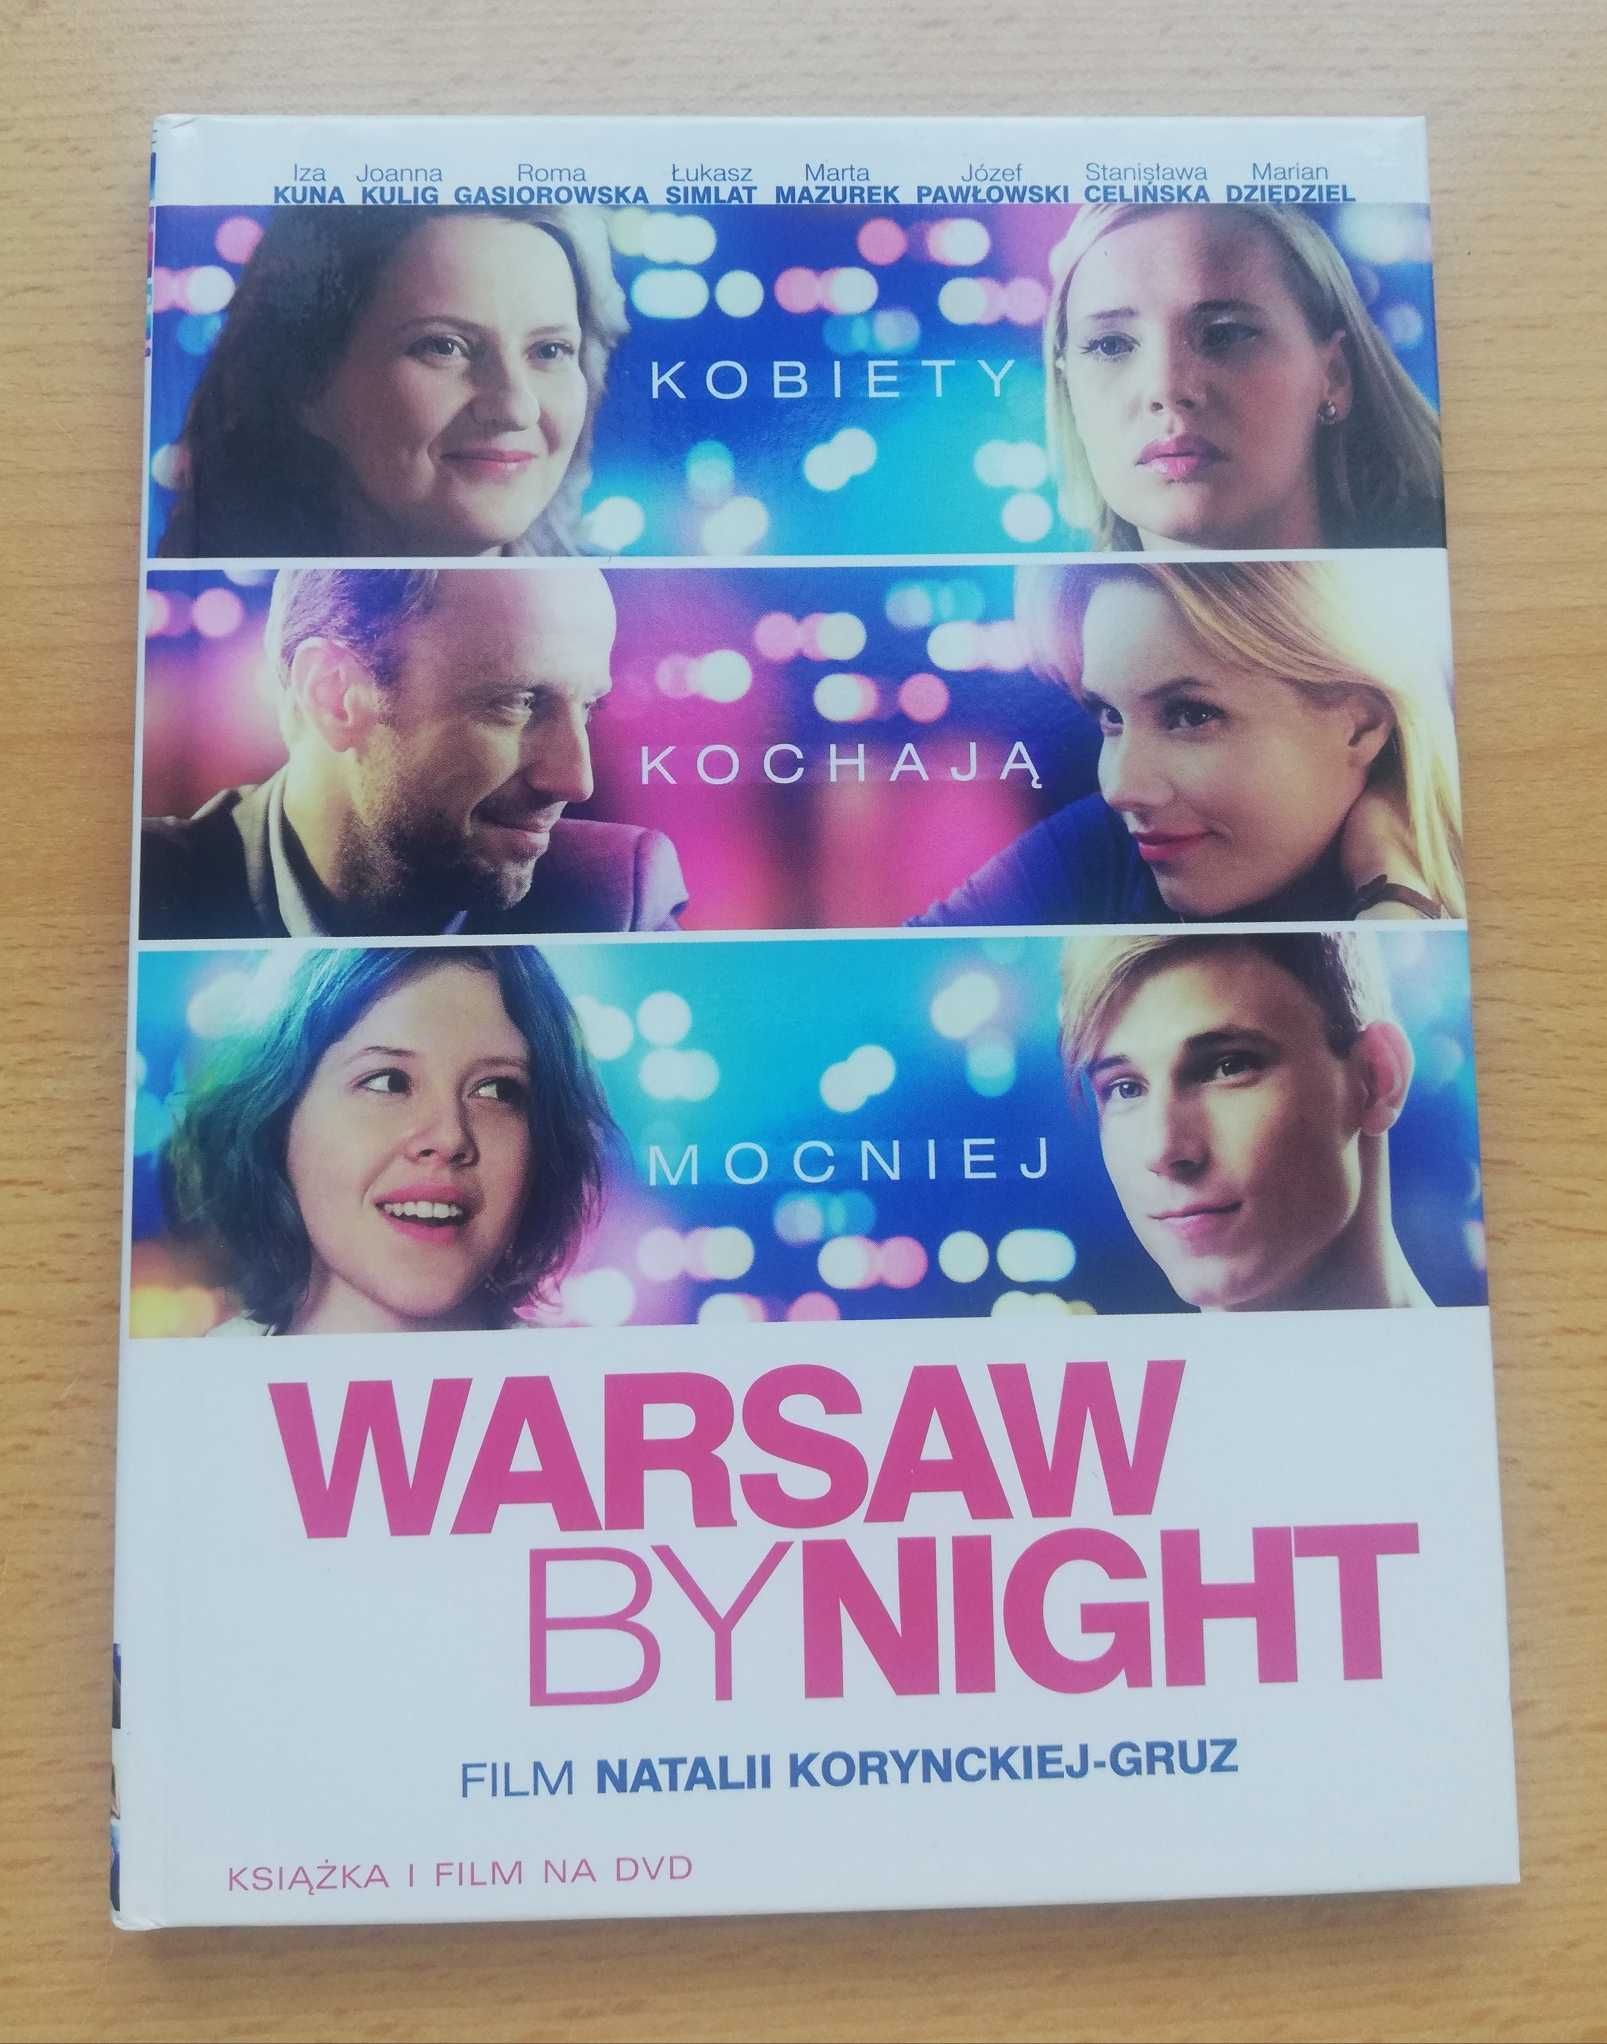 Płyta DVD z filmem "Warsaw by night" Natalii Korynckiej-Gruz